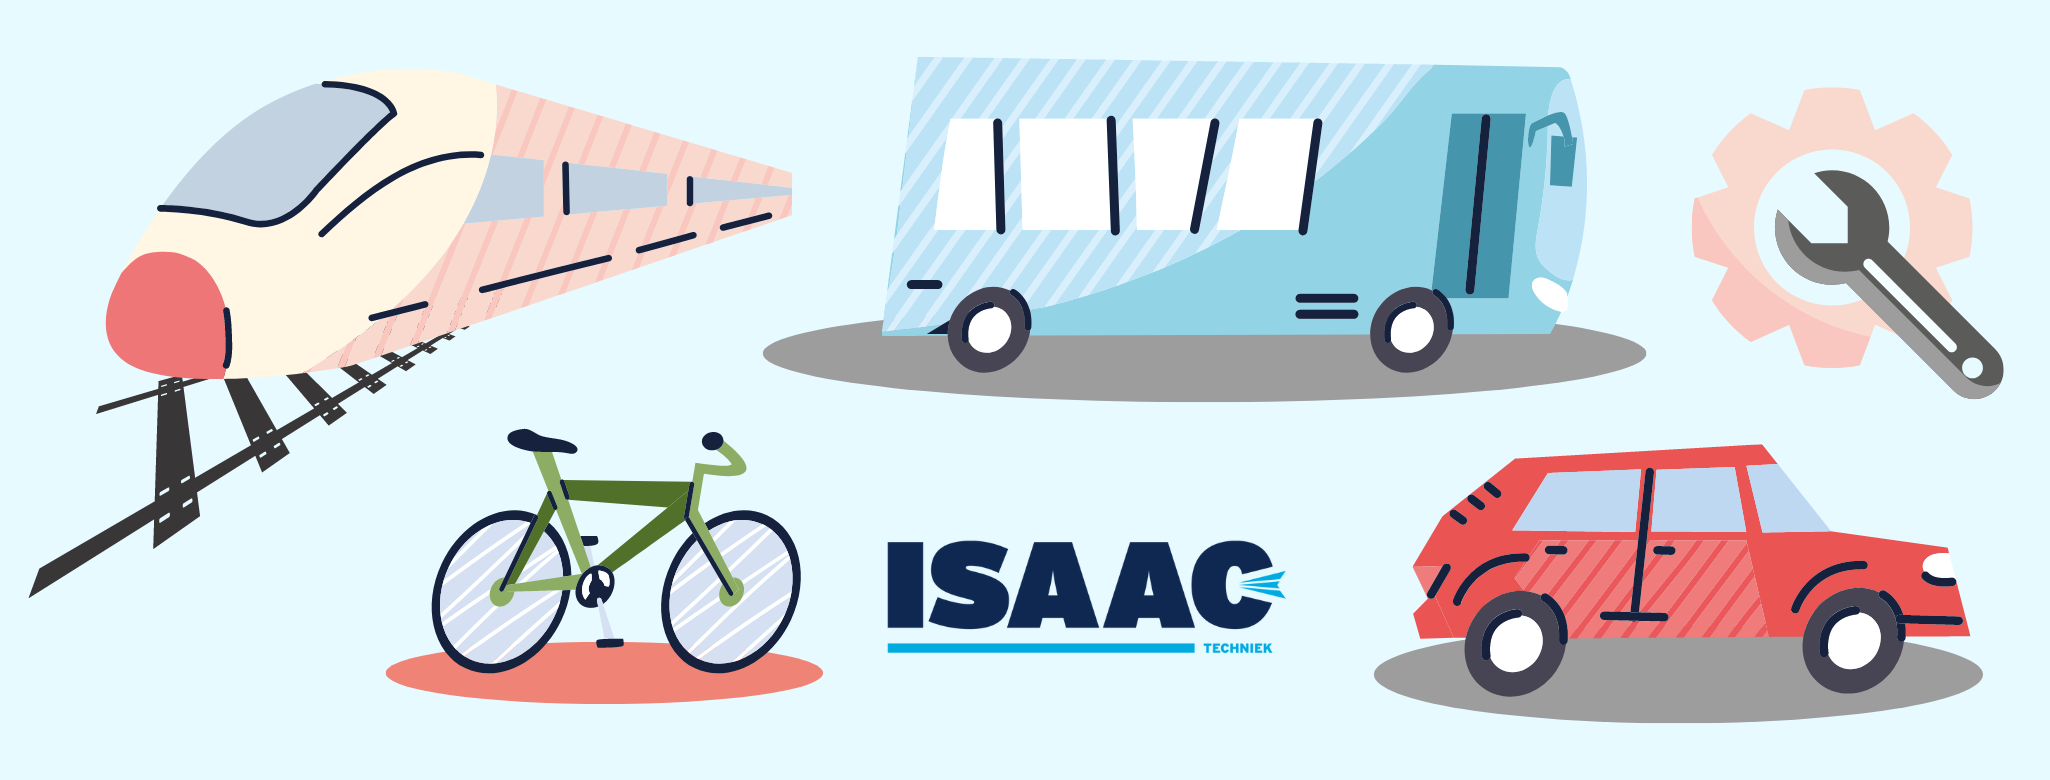 Isaac-techniek | Mobiliteit en transport